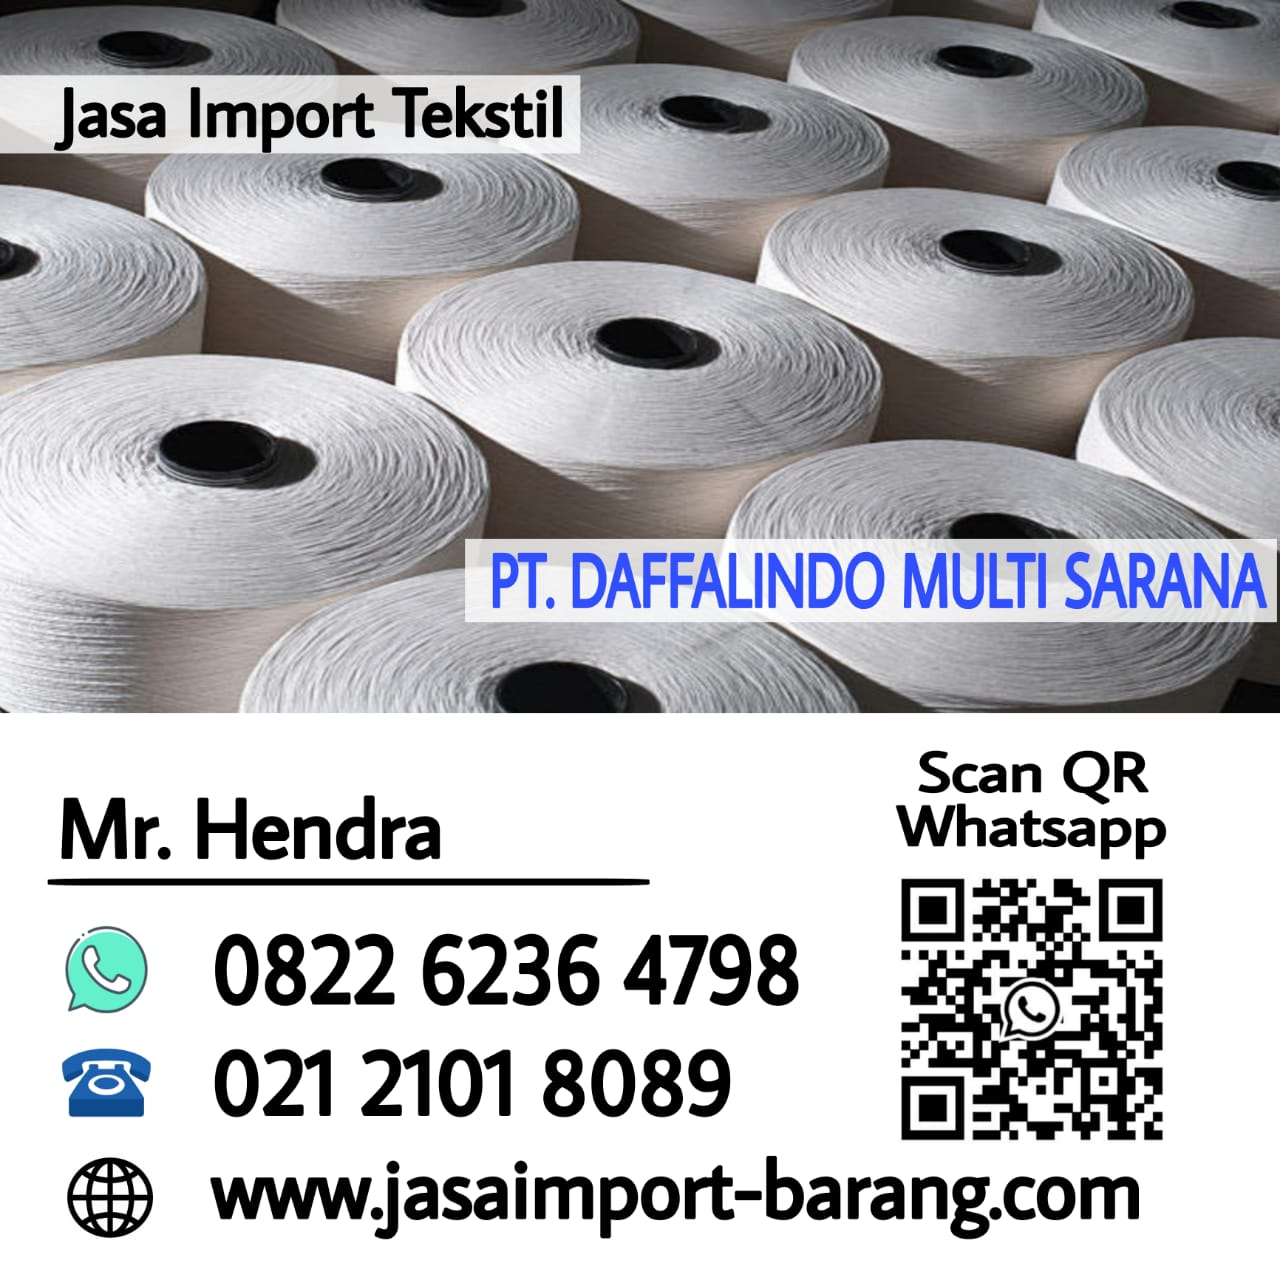 Jasa-import-tekstil.jpg